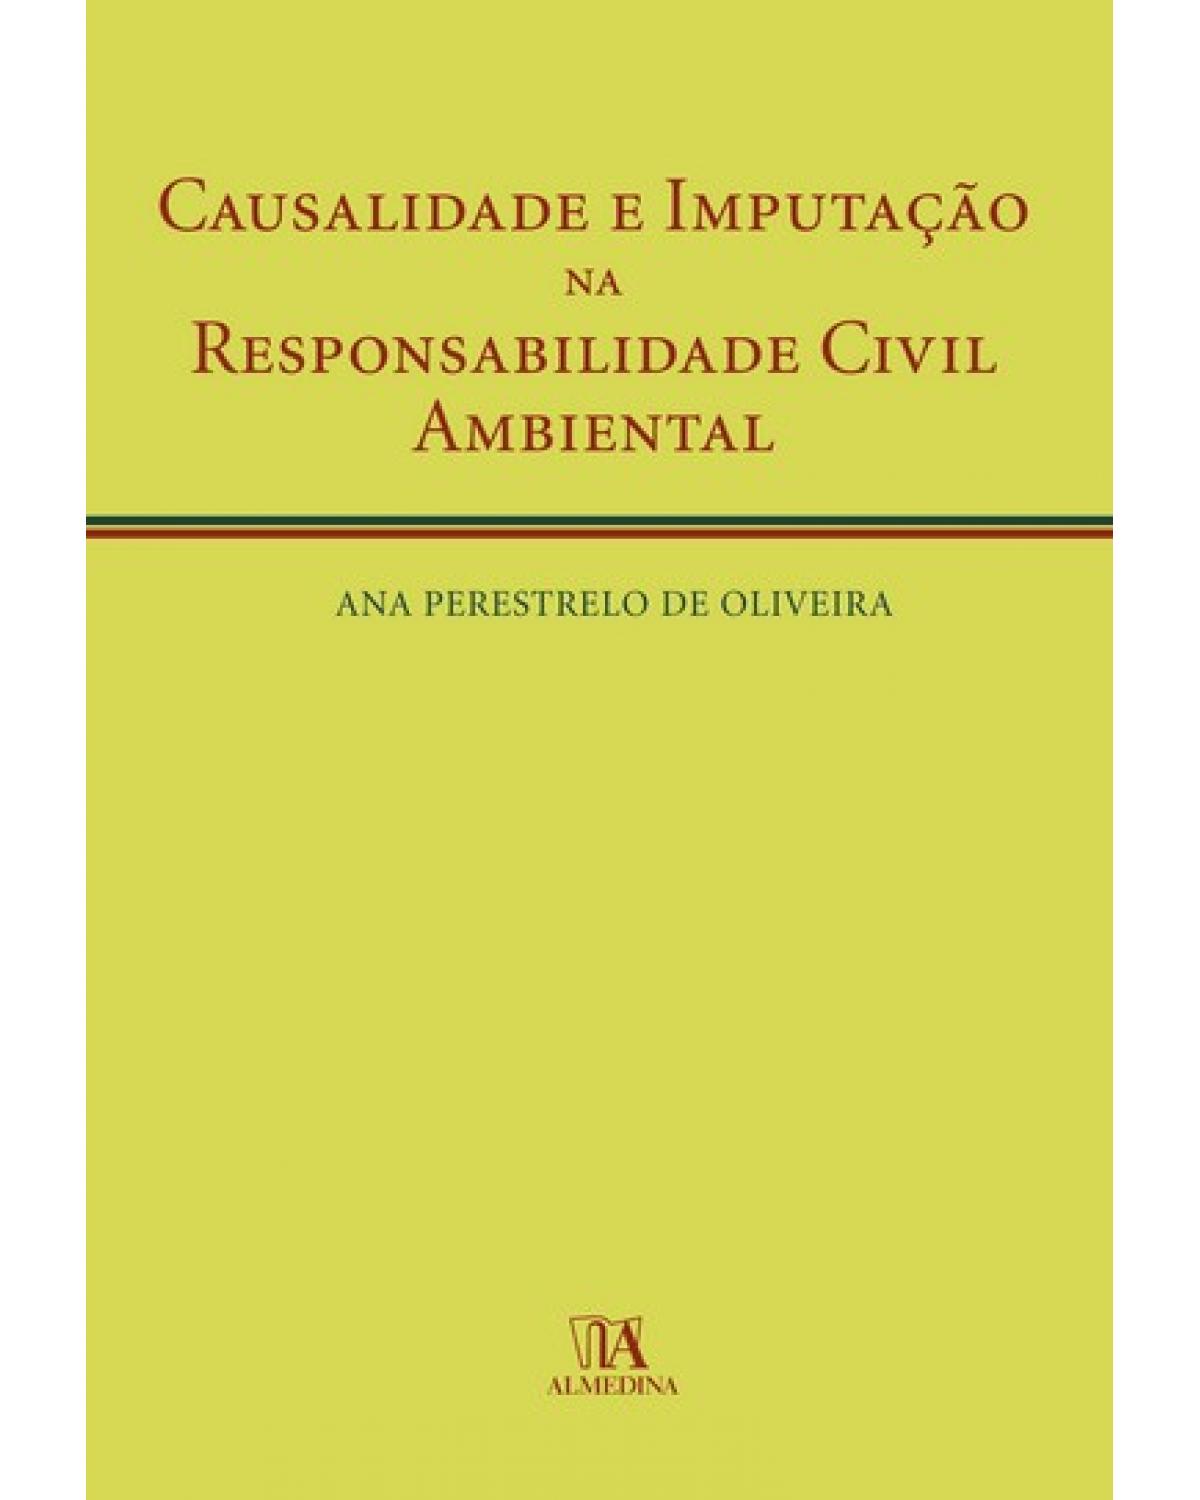 Causalidade e imputação na responsabilidade civil ambiental - 1ª Edição | 2007